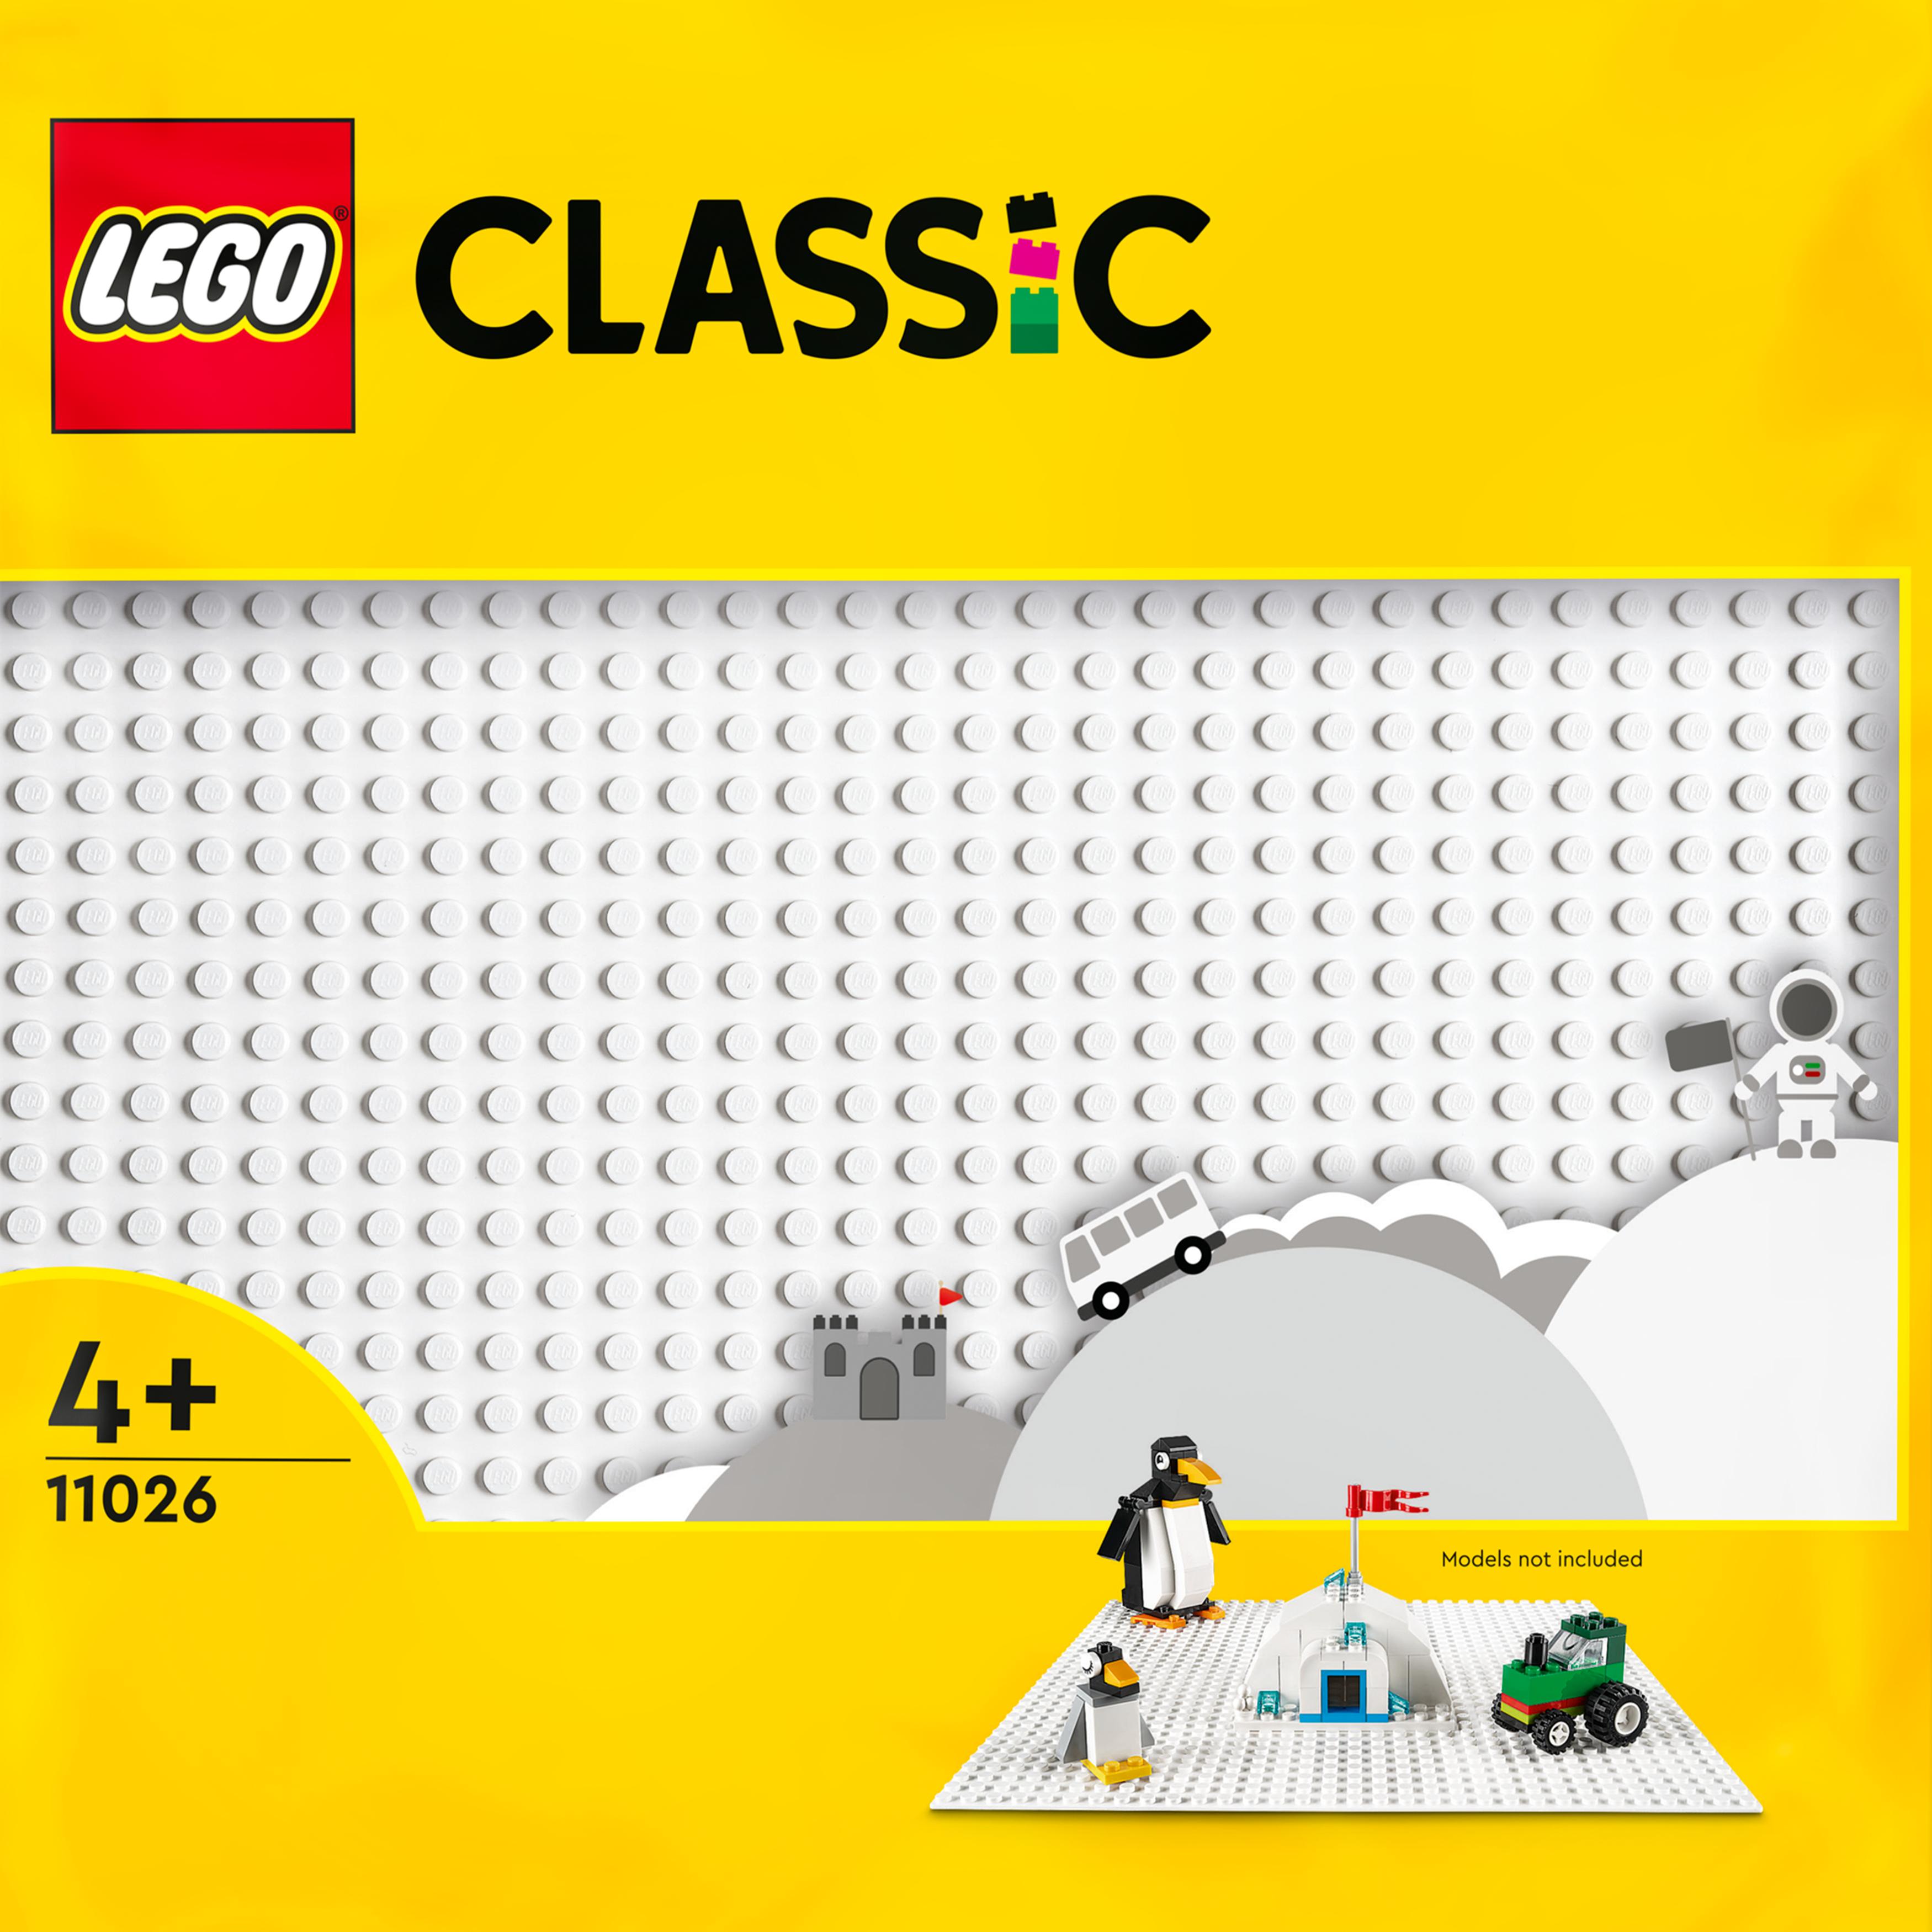 LEGO 11024 CLASSIC Duża Podstawka konstrukcyjna Szara płytka do